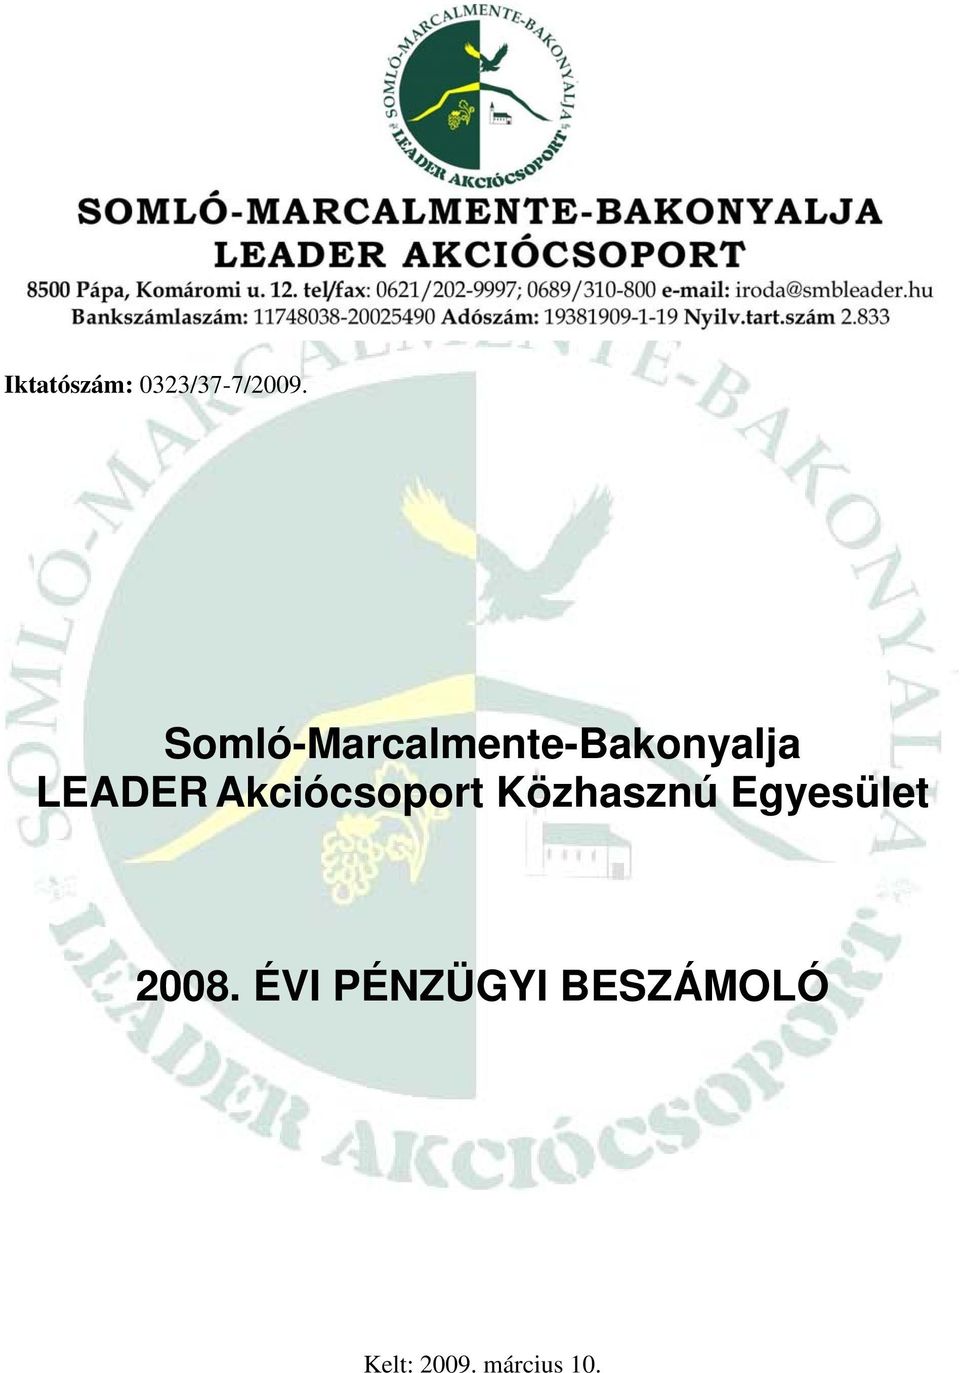 Akciócsoport Közhasznú Egyesület 2008.